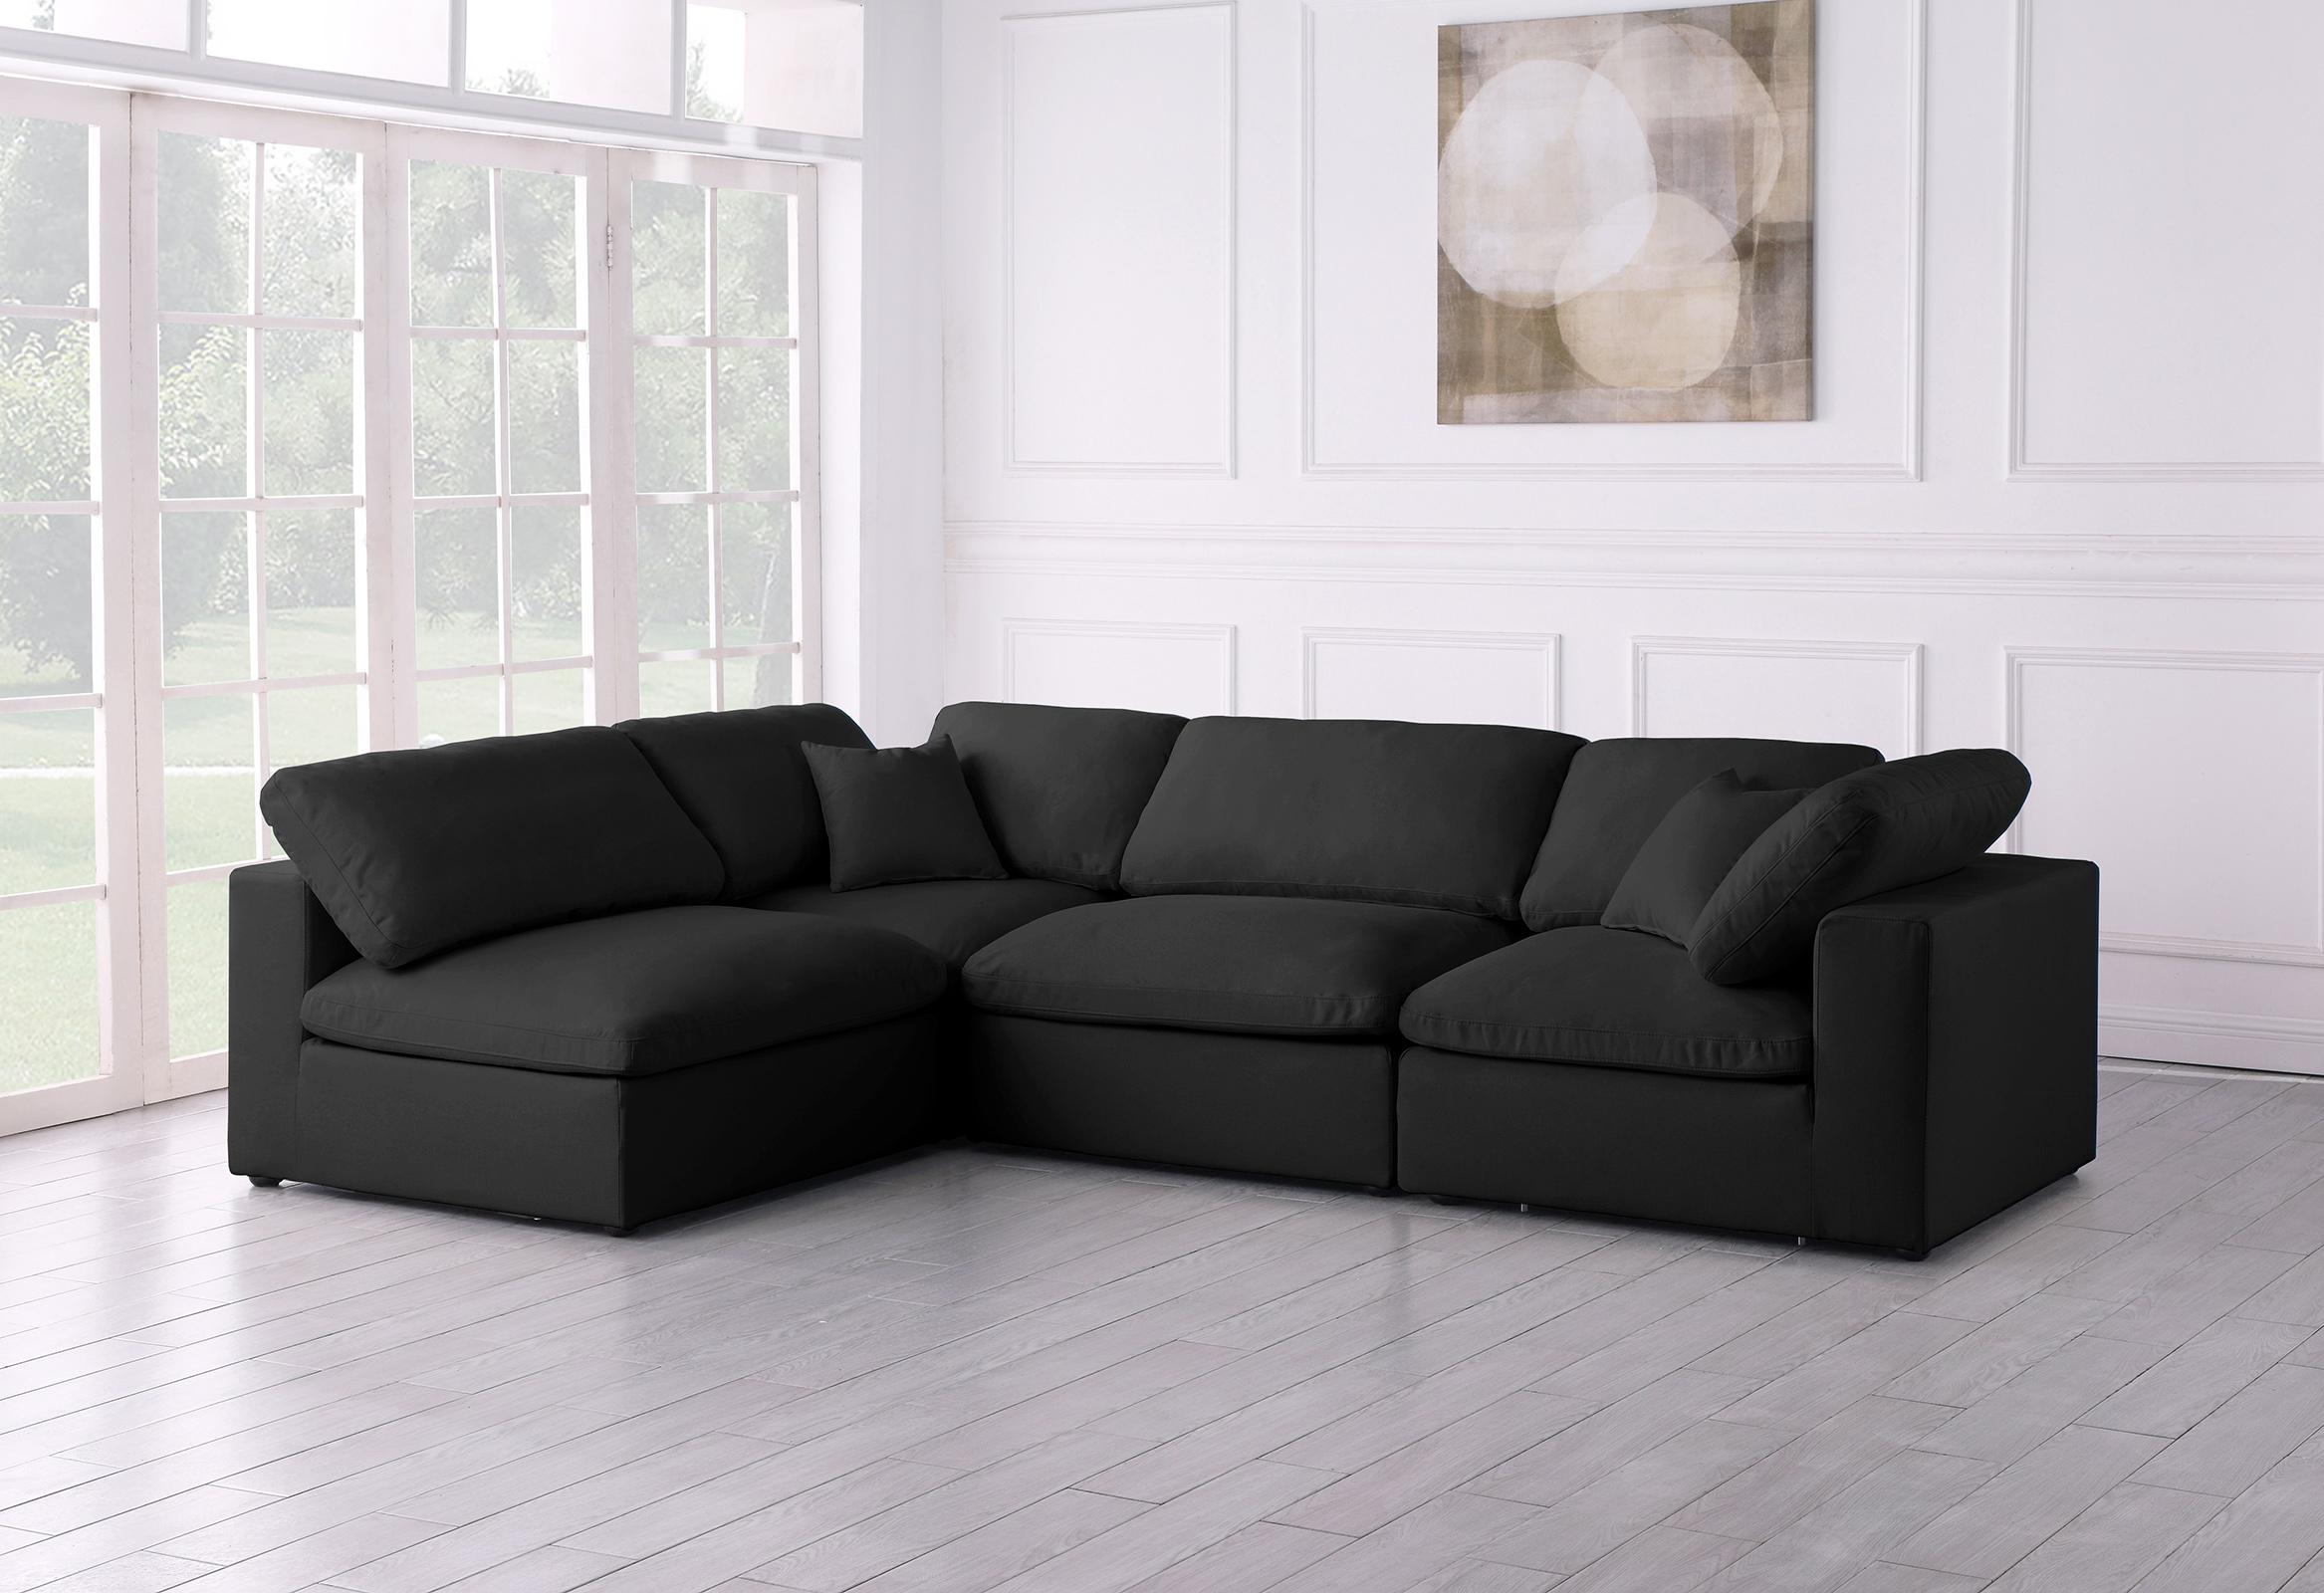 

    
Meridian Furniture 602Black-Sec4B Sectional Sofa Black 602Black-Sec4B
